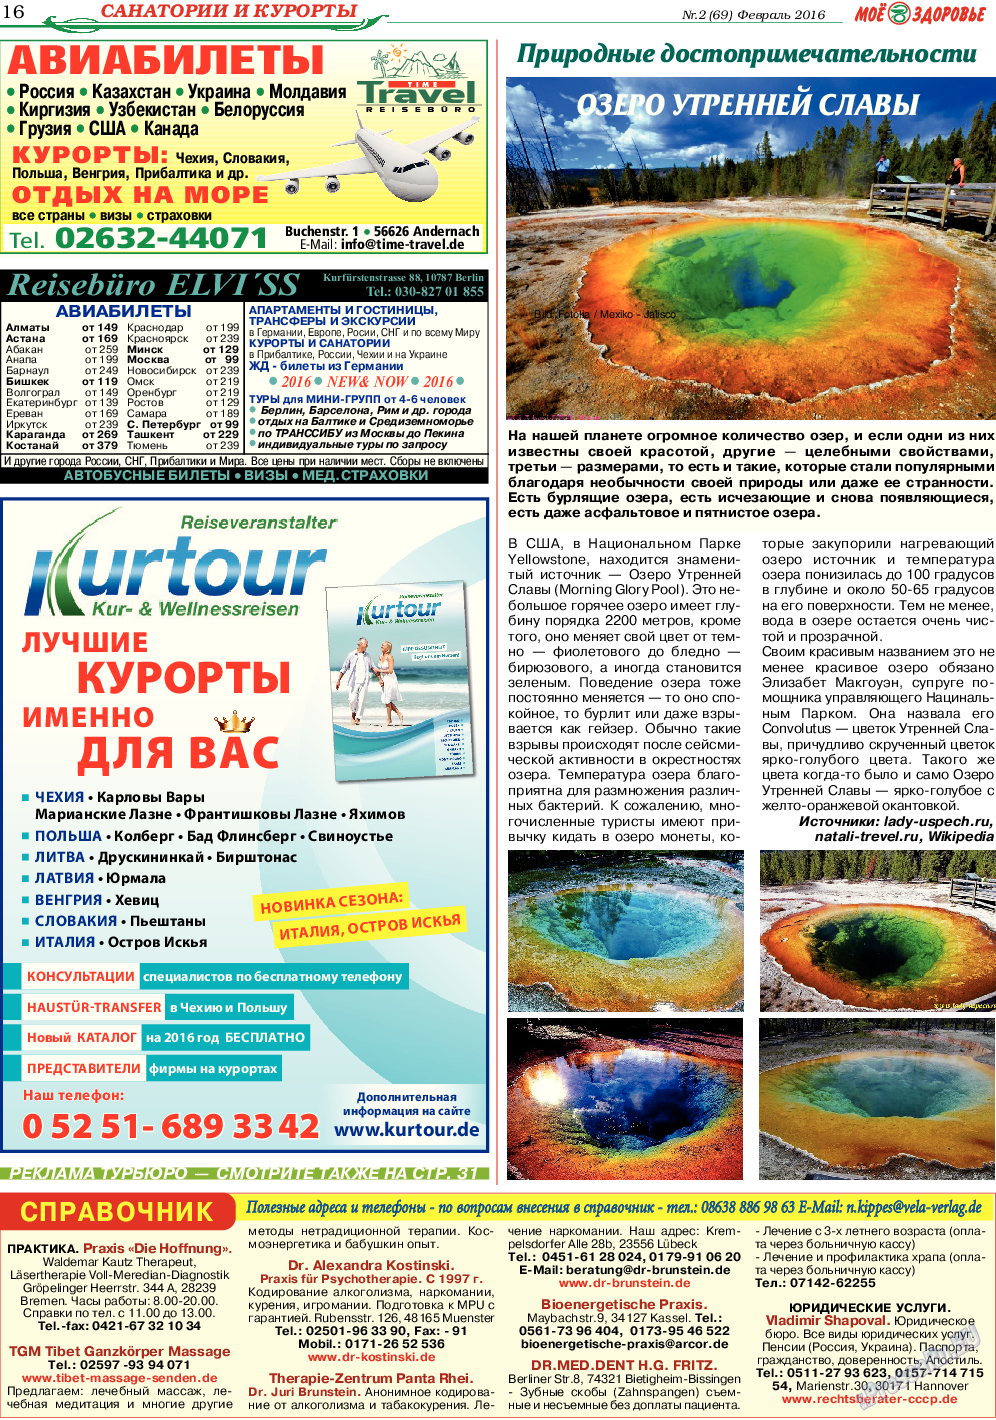 Кругозор, газета. 2016 №2 стр.16